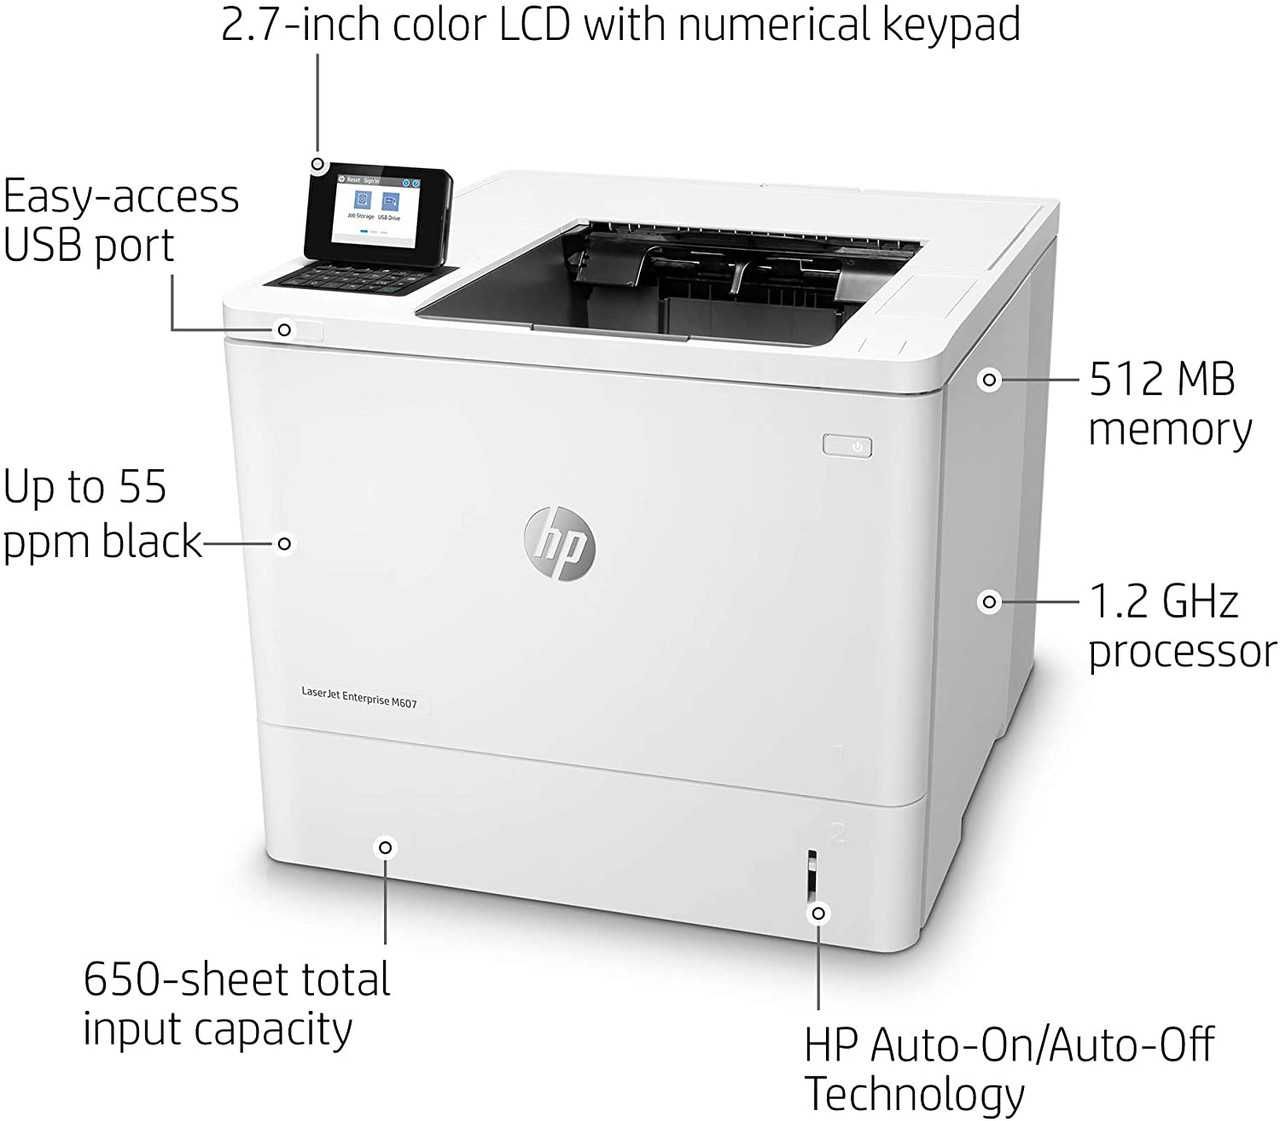 Скоростной принтер для большого офиса HP LaserJet Enterprise M607n